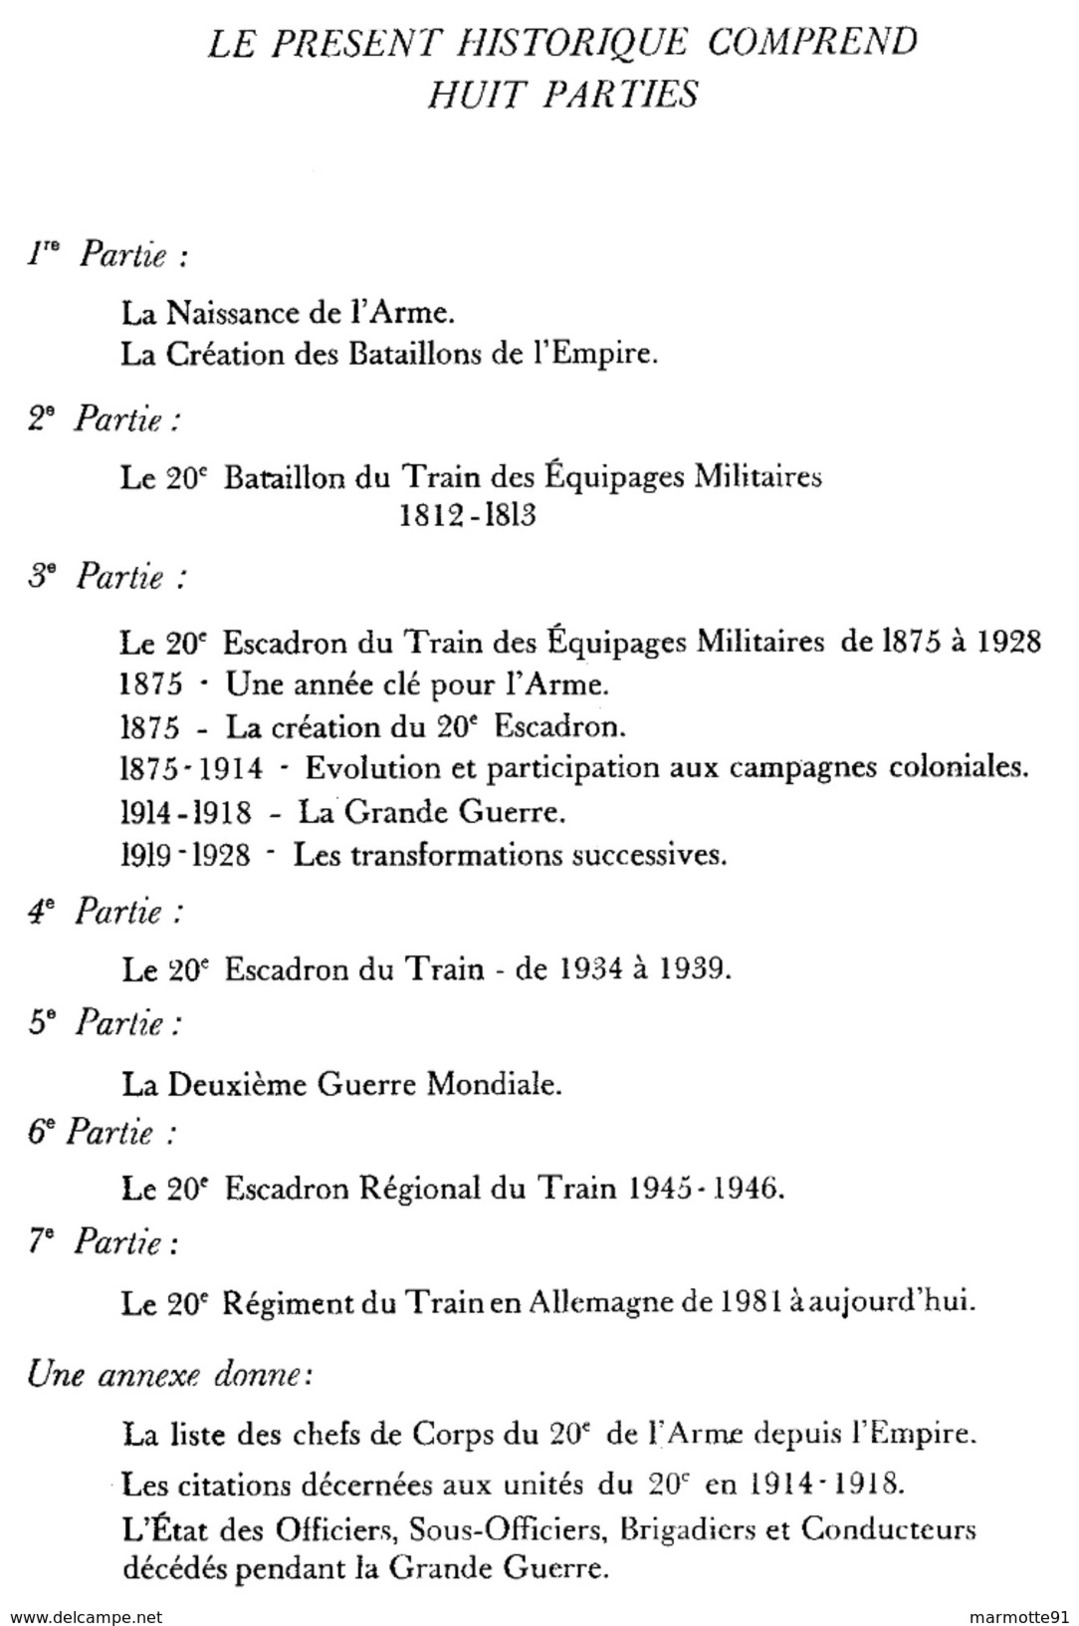 HISTORIQUE DU 20e BATAILLON DU TRAIN DES EQUIPAGES MILITAIRES AU 20e REGIMENT DU TRAIN - Francese